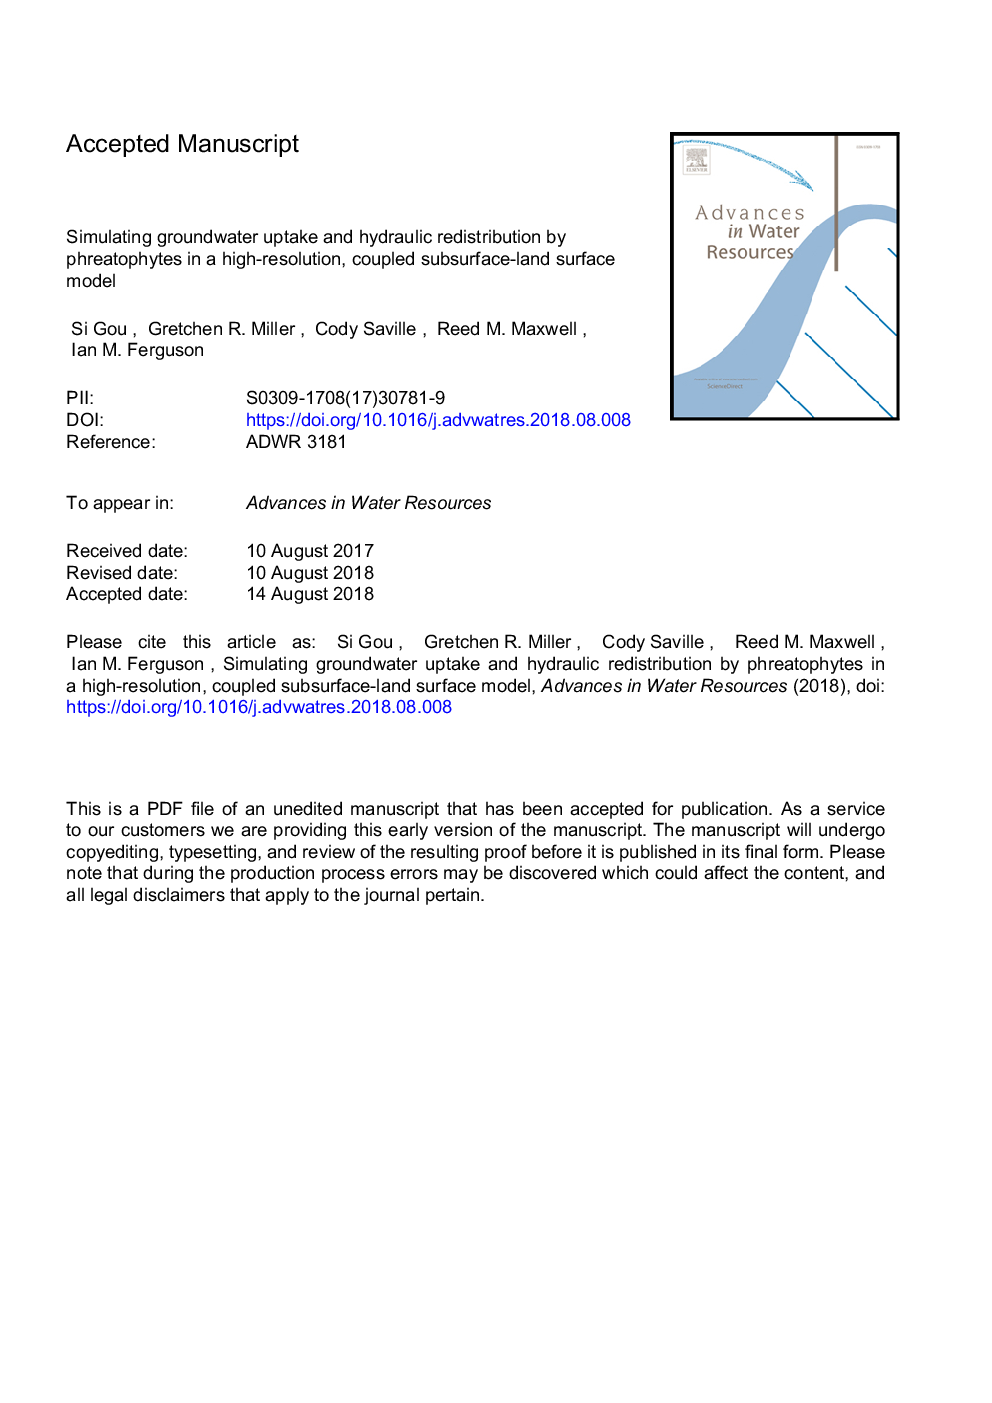 شبیه سازی جذب آب های زیرزمینی و توزیع مجدد هیدرولیکی توسط فریتوفیت ها در یک مدل سطح زمین زیرزمینی با وضوح بالا